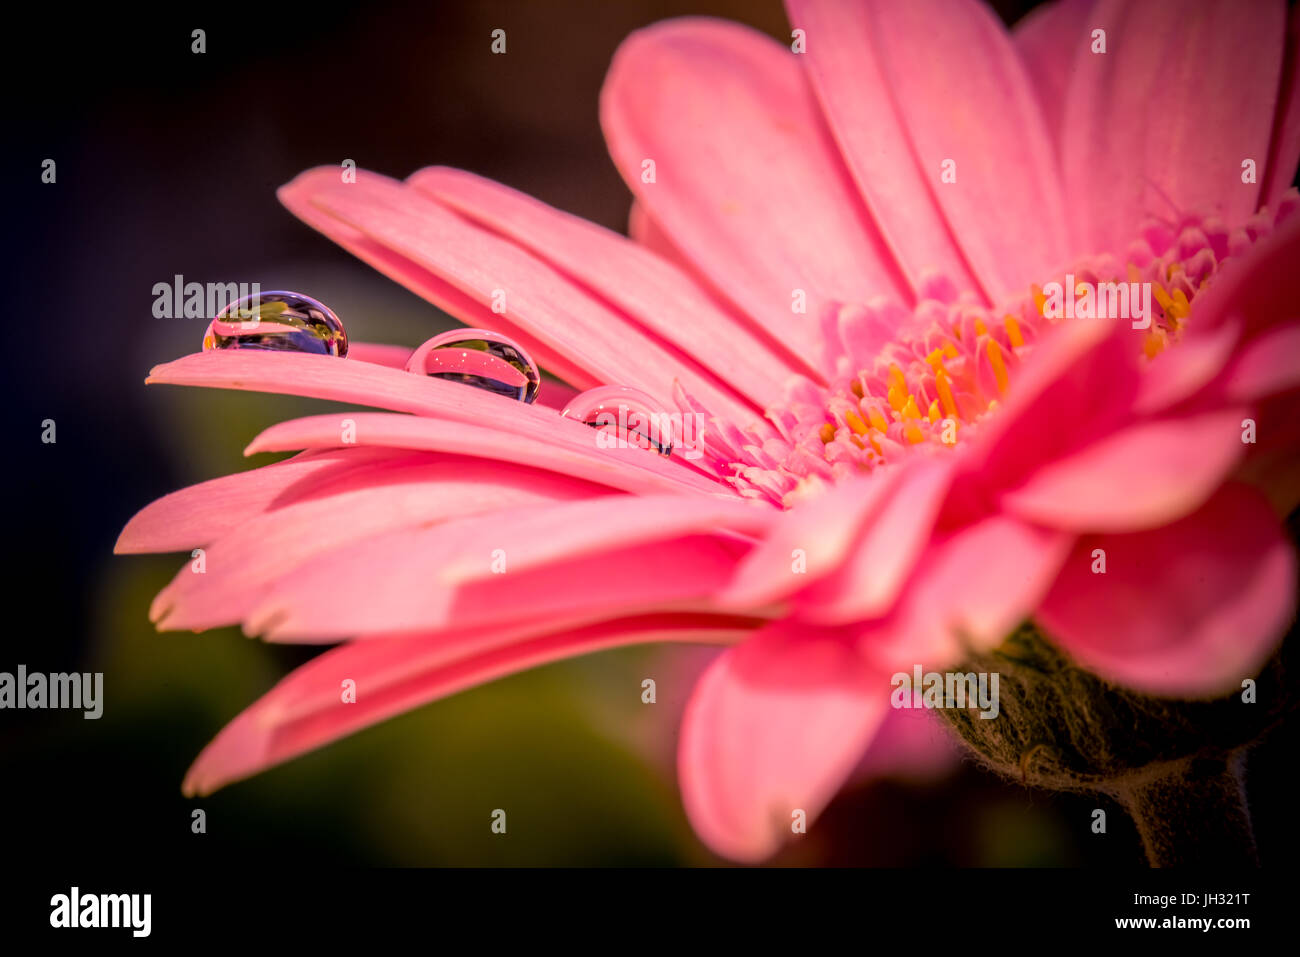 Una pink gerbera fiore con un centro giallo ha tre goccioline di acqua su uno dei petali, questo ha un riflesso del fiore capovolto Foto Stock